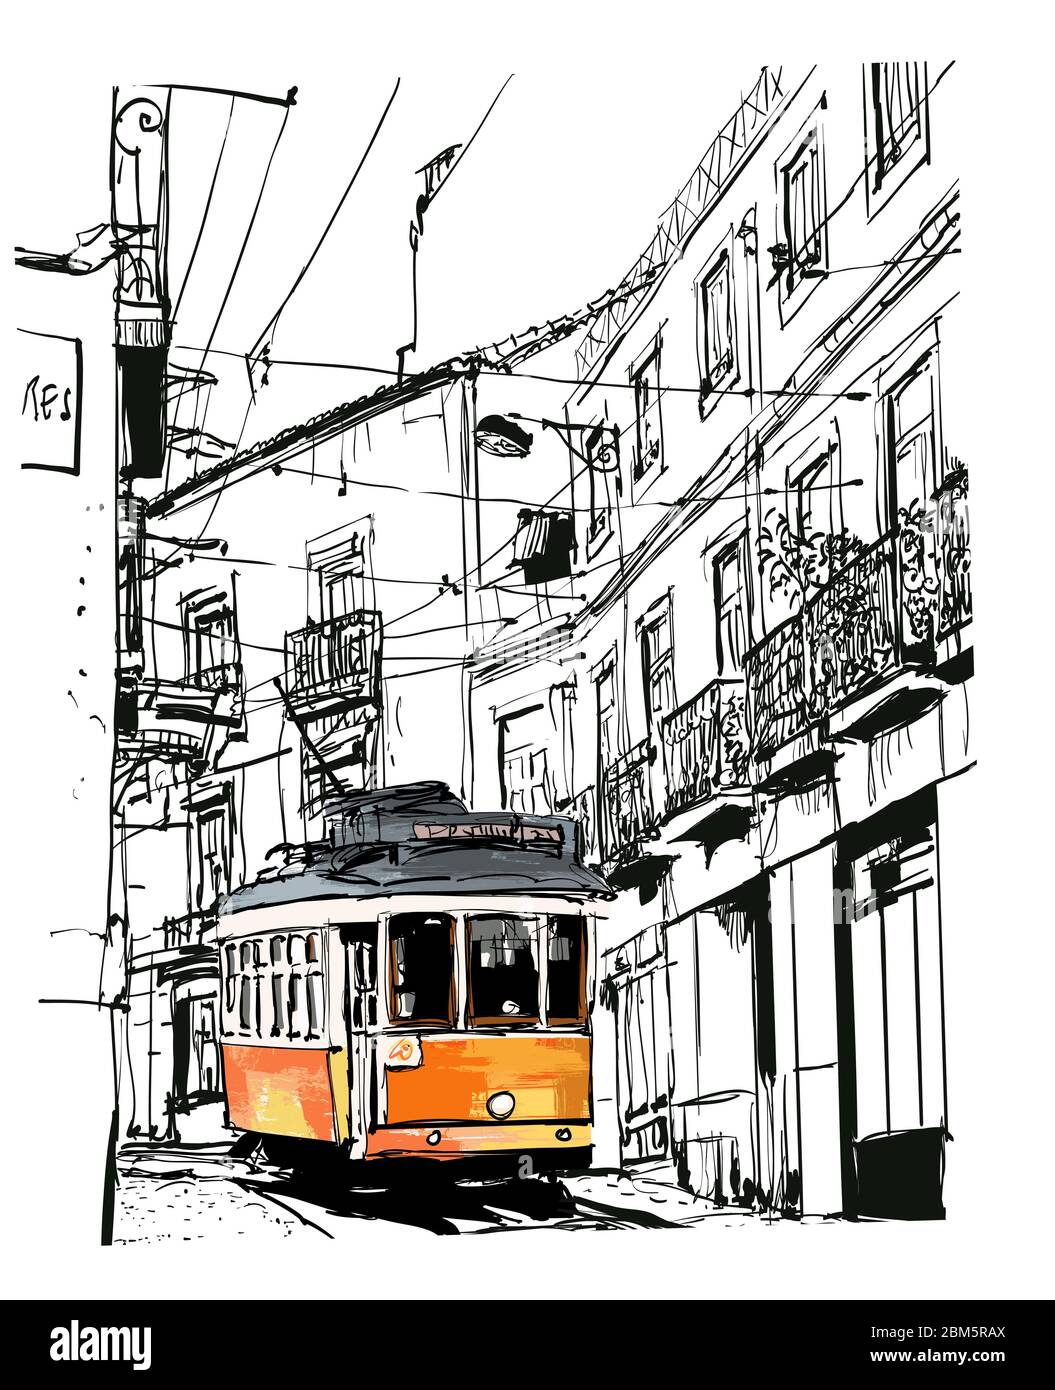 Vista sulla strada con il famoso tram vecchio a Lisbona, Portogallo - illustrazione vettoriale (ideale per la stampa su tessuto o carta, poster o carta da parati, casa dec Illustrazione Vettoriale